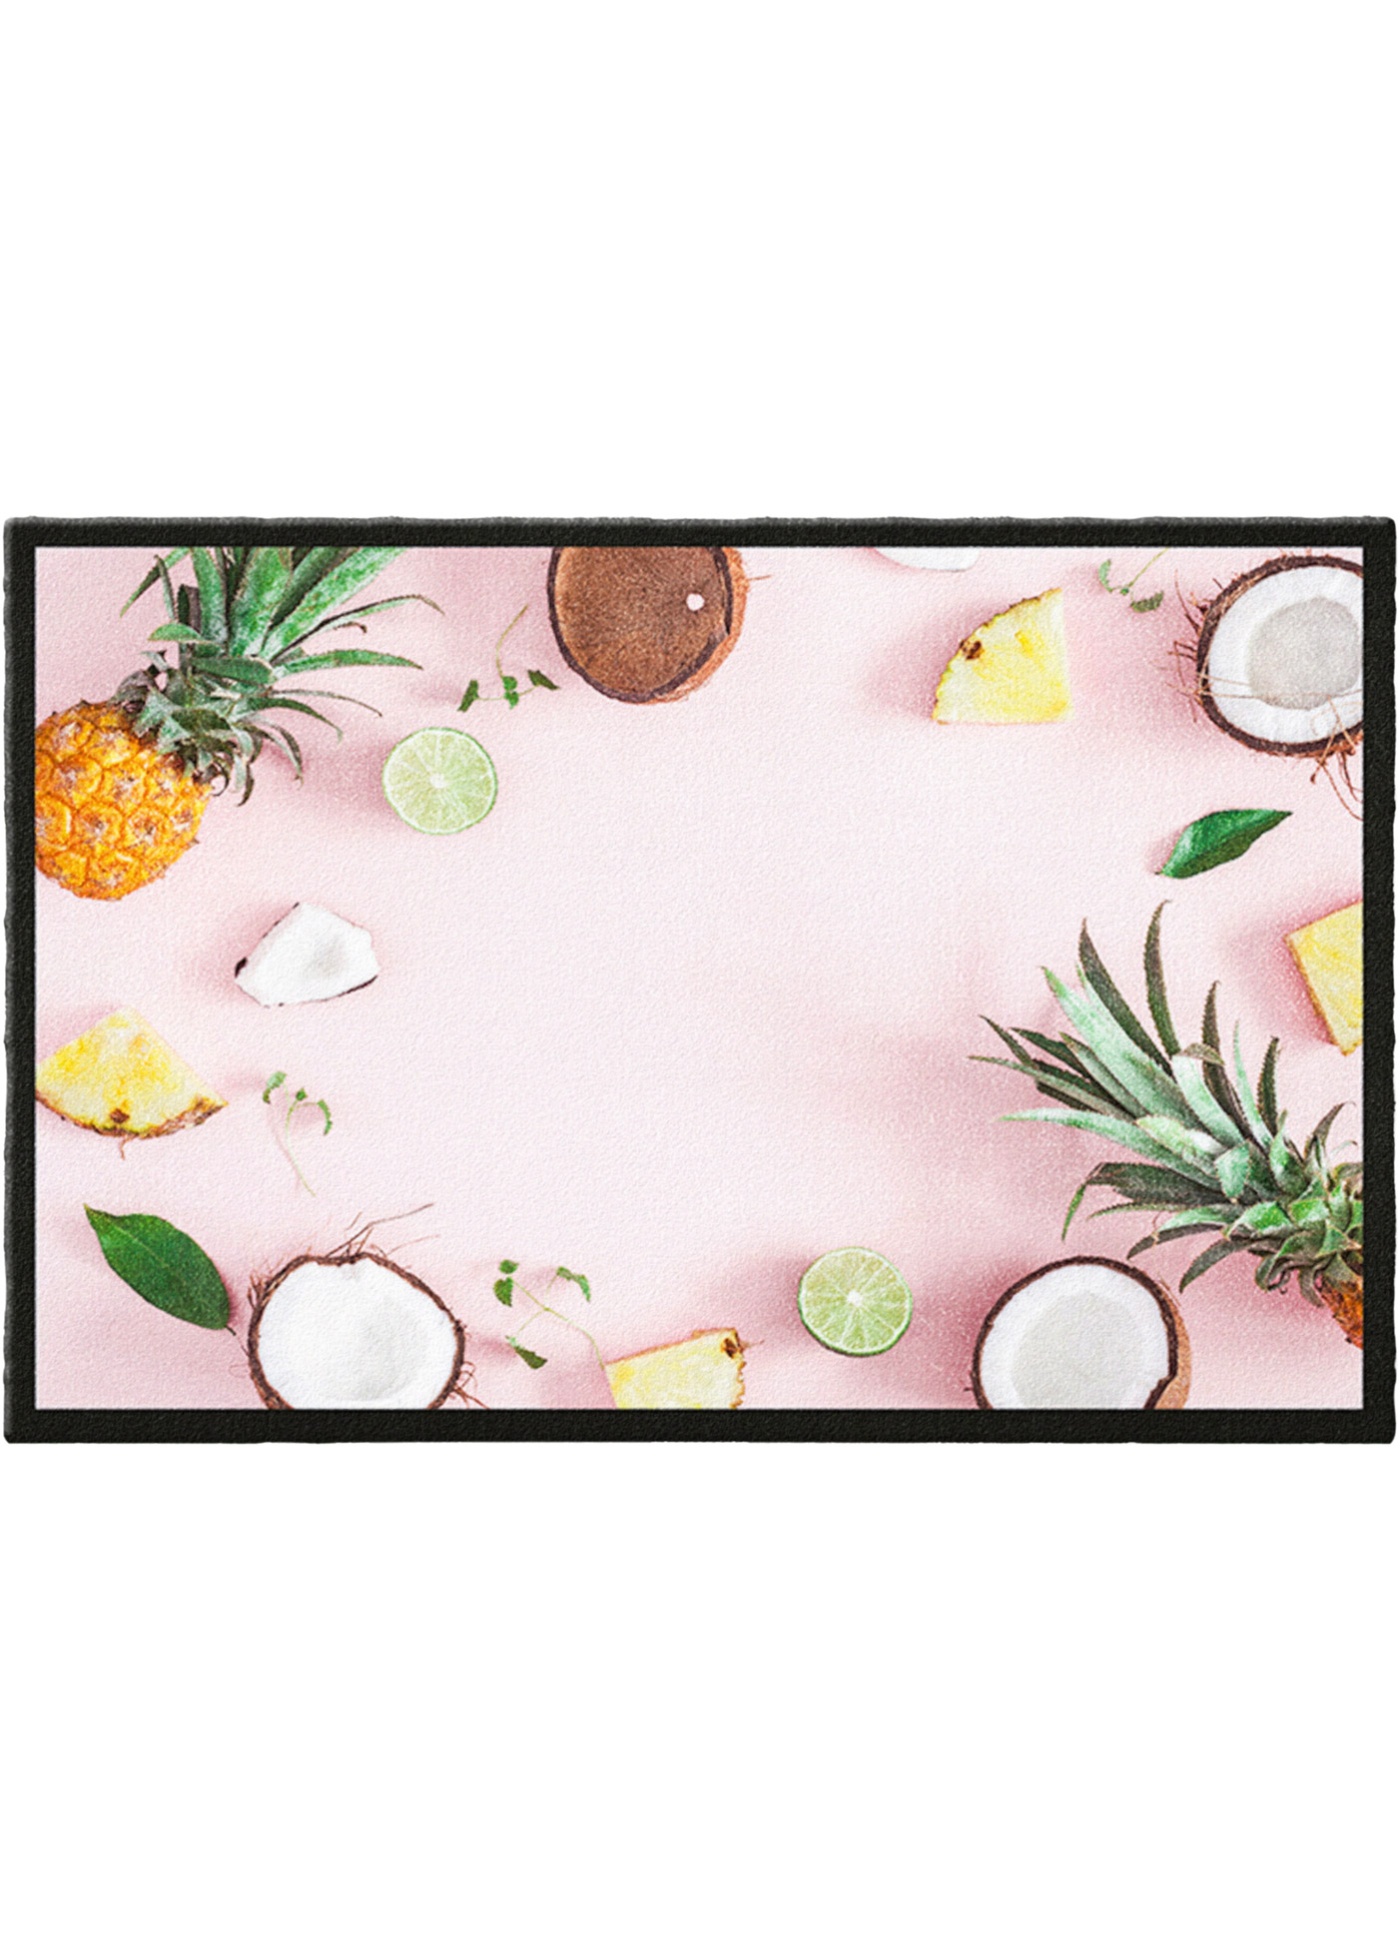 Fußmatte mit sommerlichem Motiv (90374581) in rosé